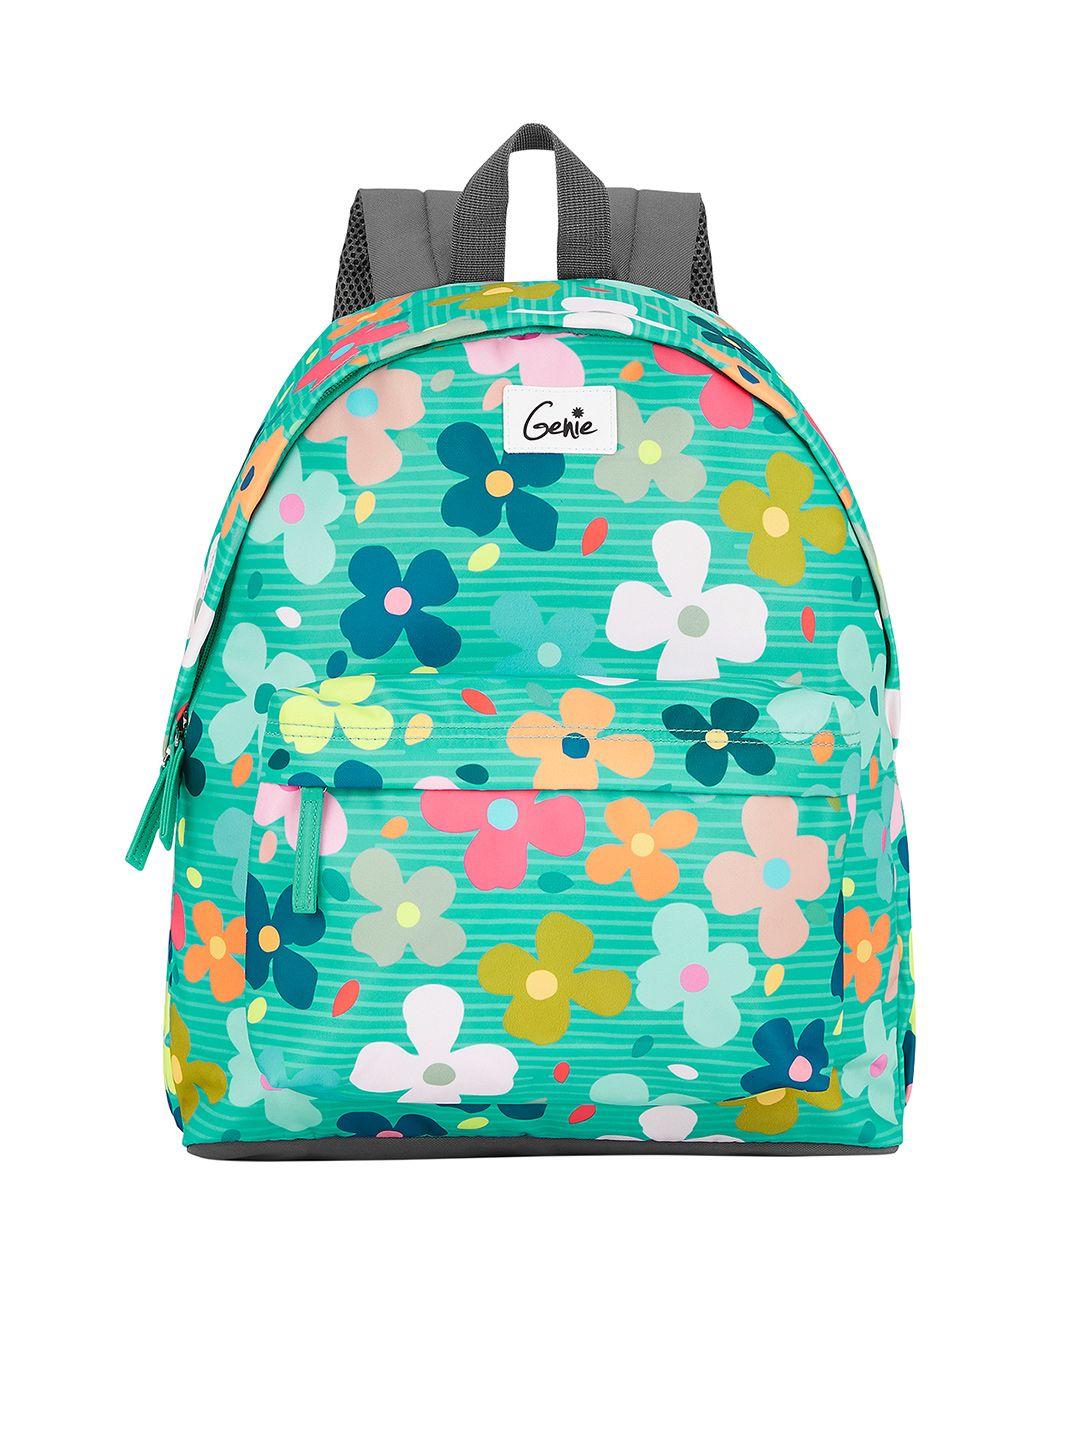 genie women floral printed water resistant lightweight laptop backpack